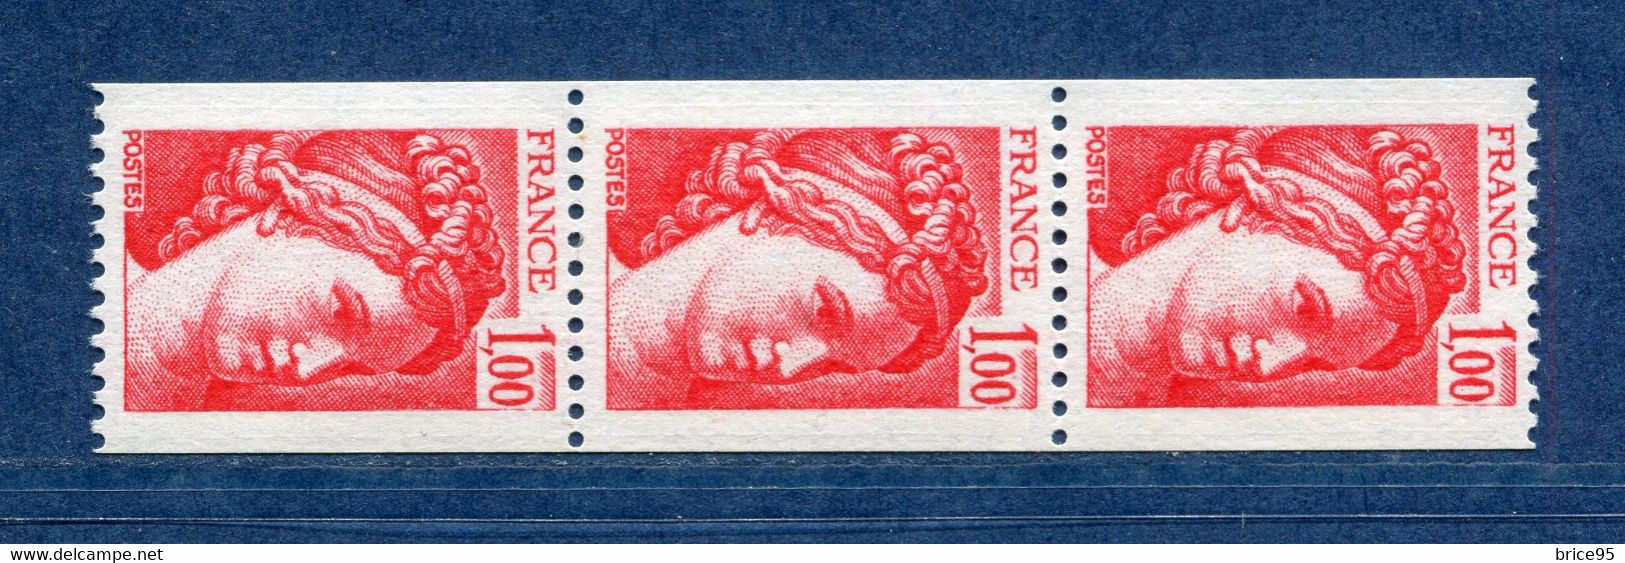 ⭐ France - Variété - YT N° 1981 A - Numéro Rouge - Couleurs - Pétouilles - Neuf Sans Charnière - 1977 ⭐ - Unused Stamps